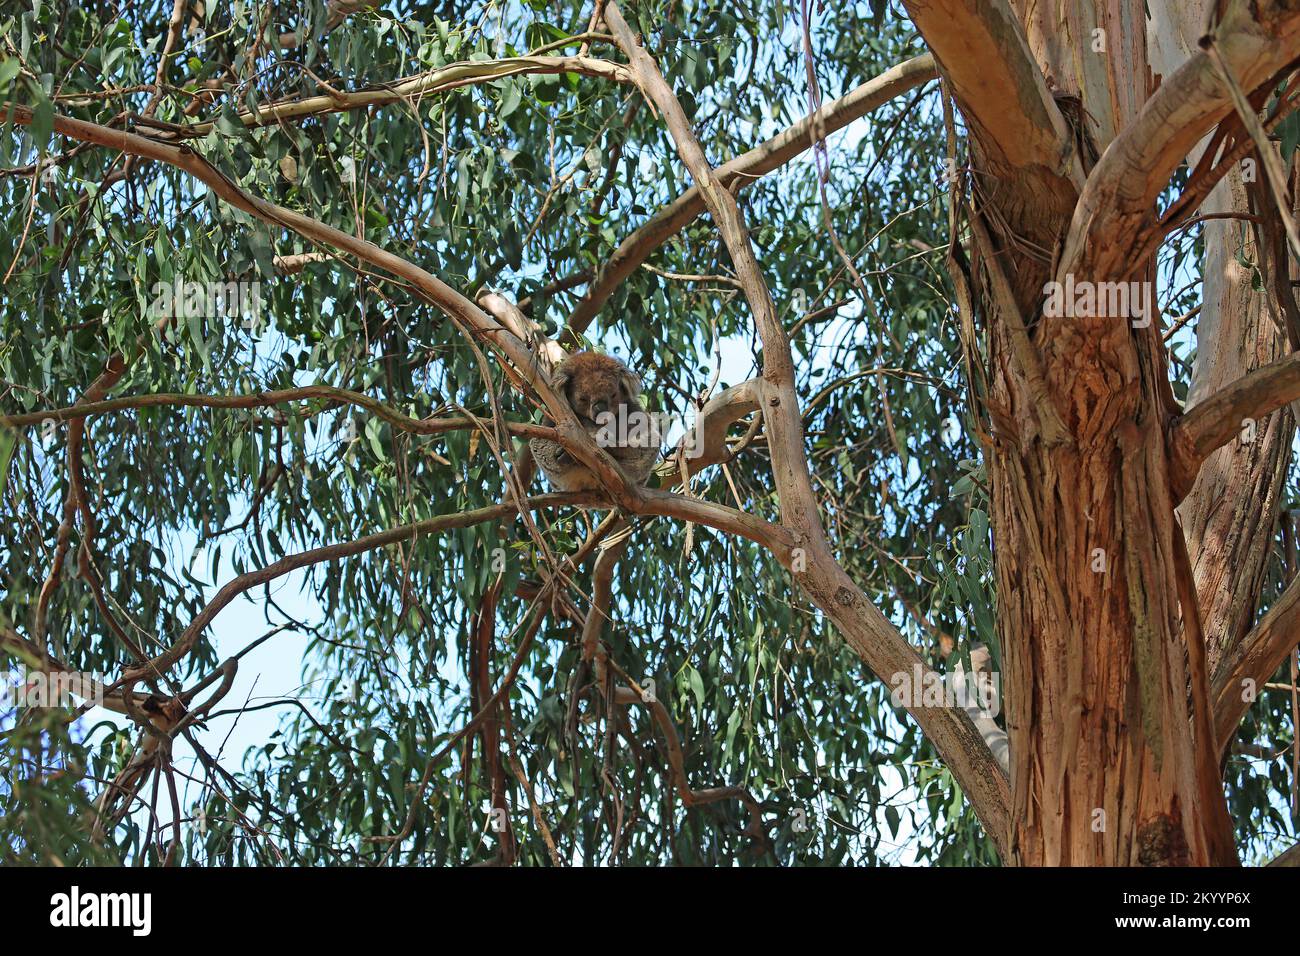 Koala sleeping on eucalyptus tree - Australia Stock Photo